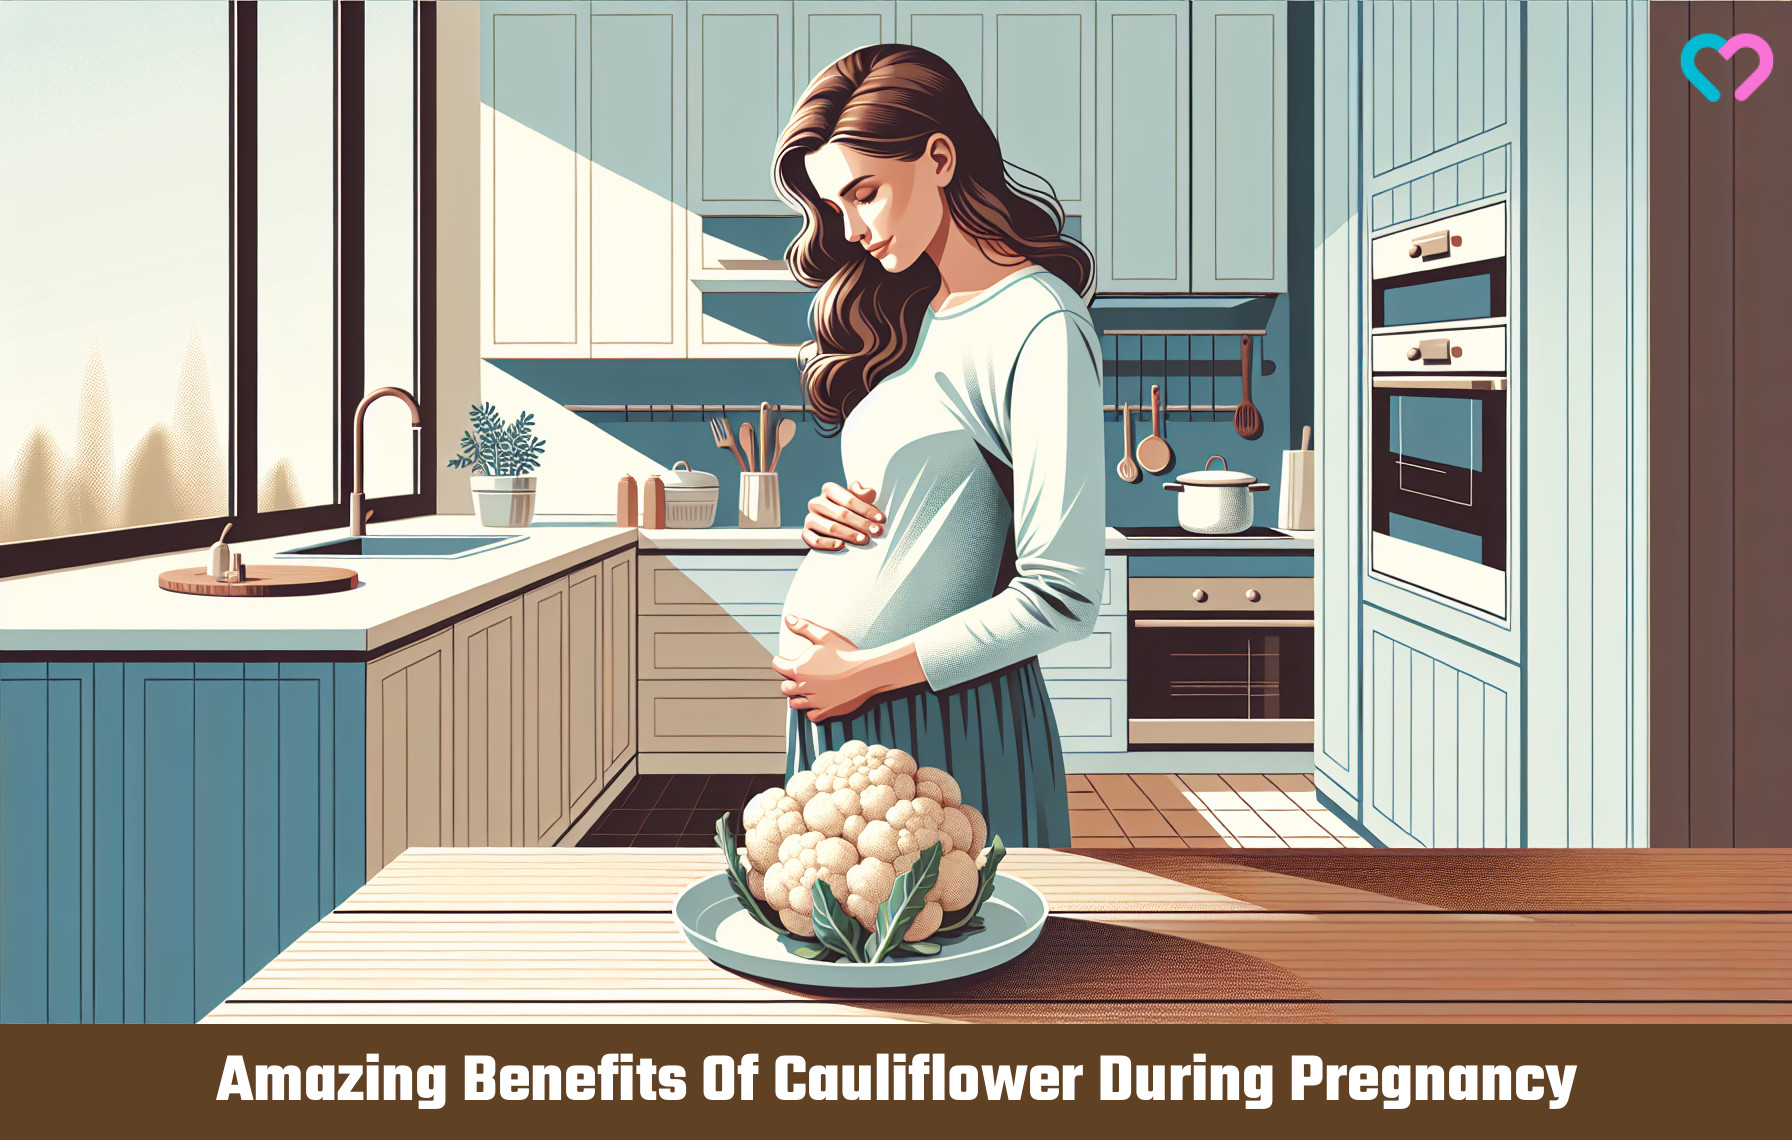 cauliflower during pregnancy_illustration